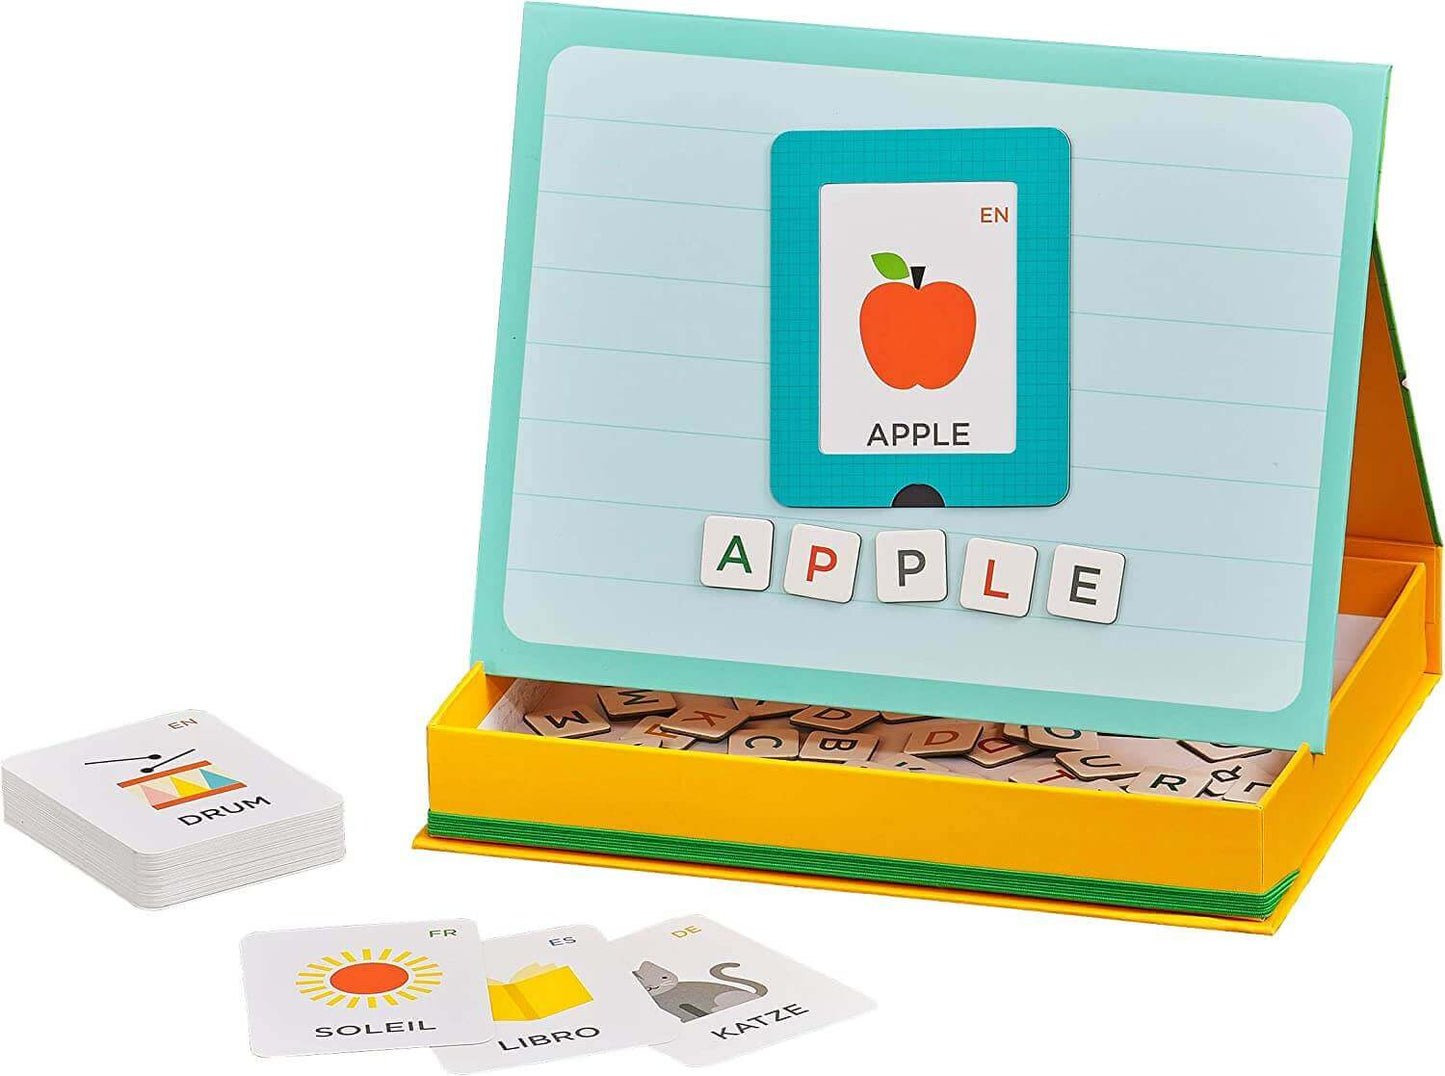 Alphabet Magnetic Playset, Petit Collage, eco-friendly Toys, Mountain Kids Toys